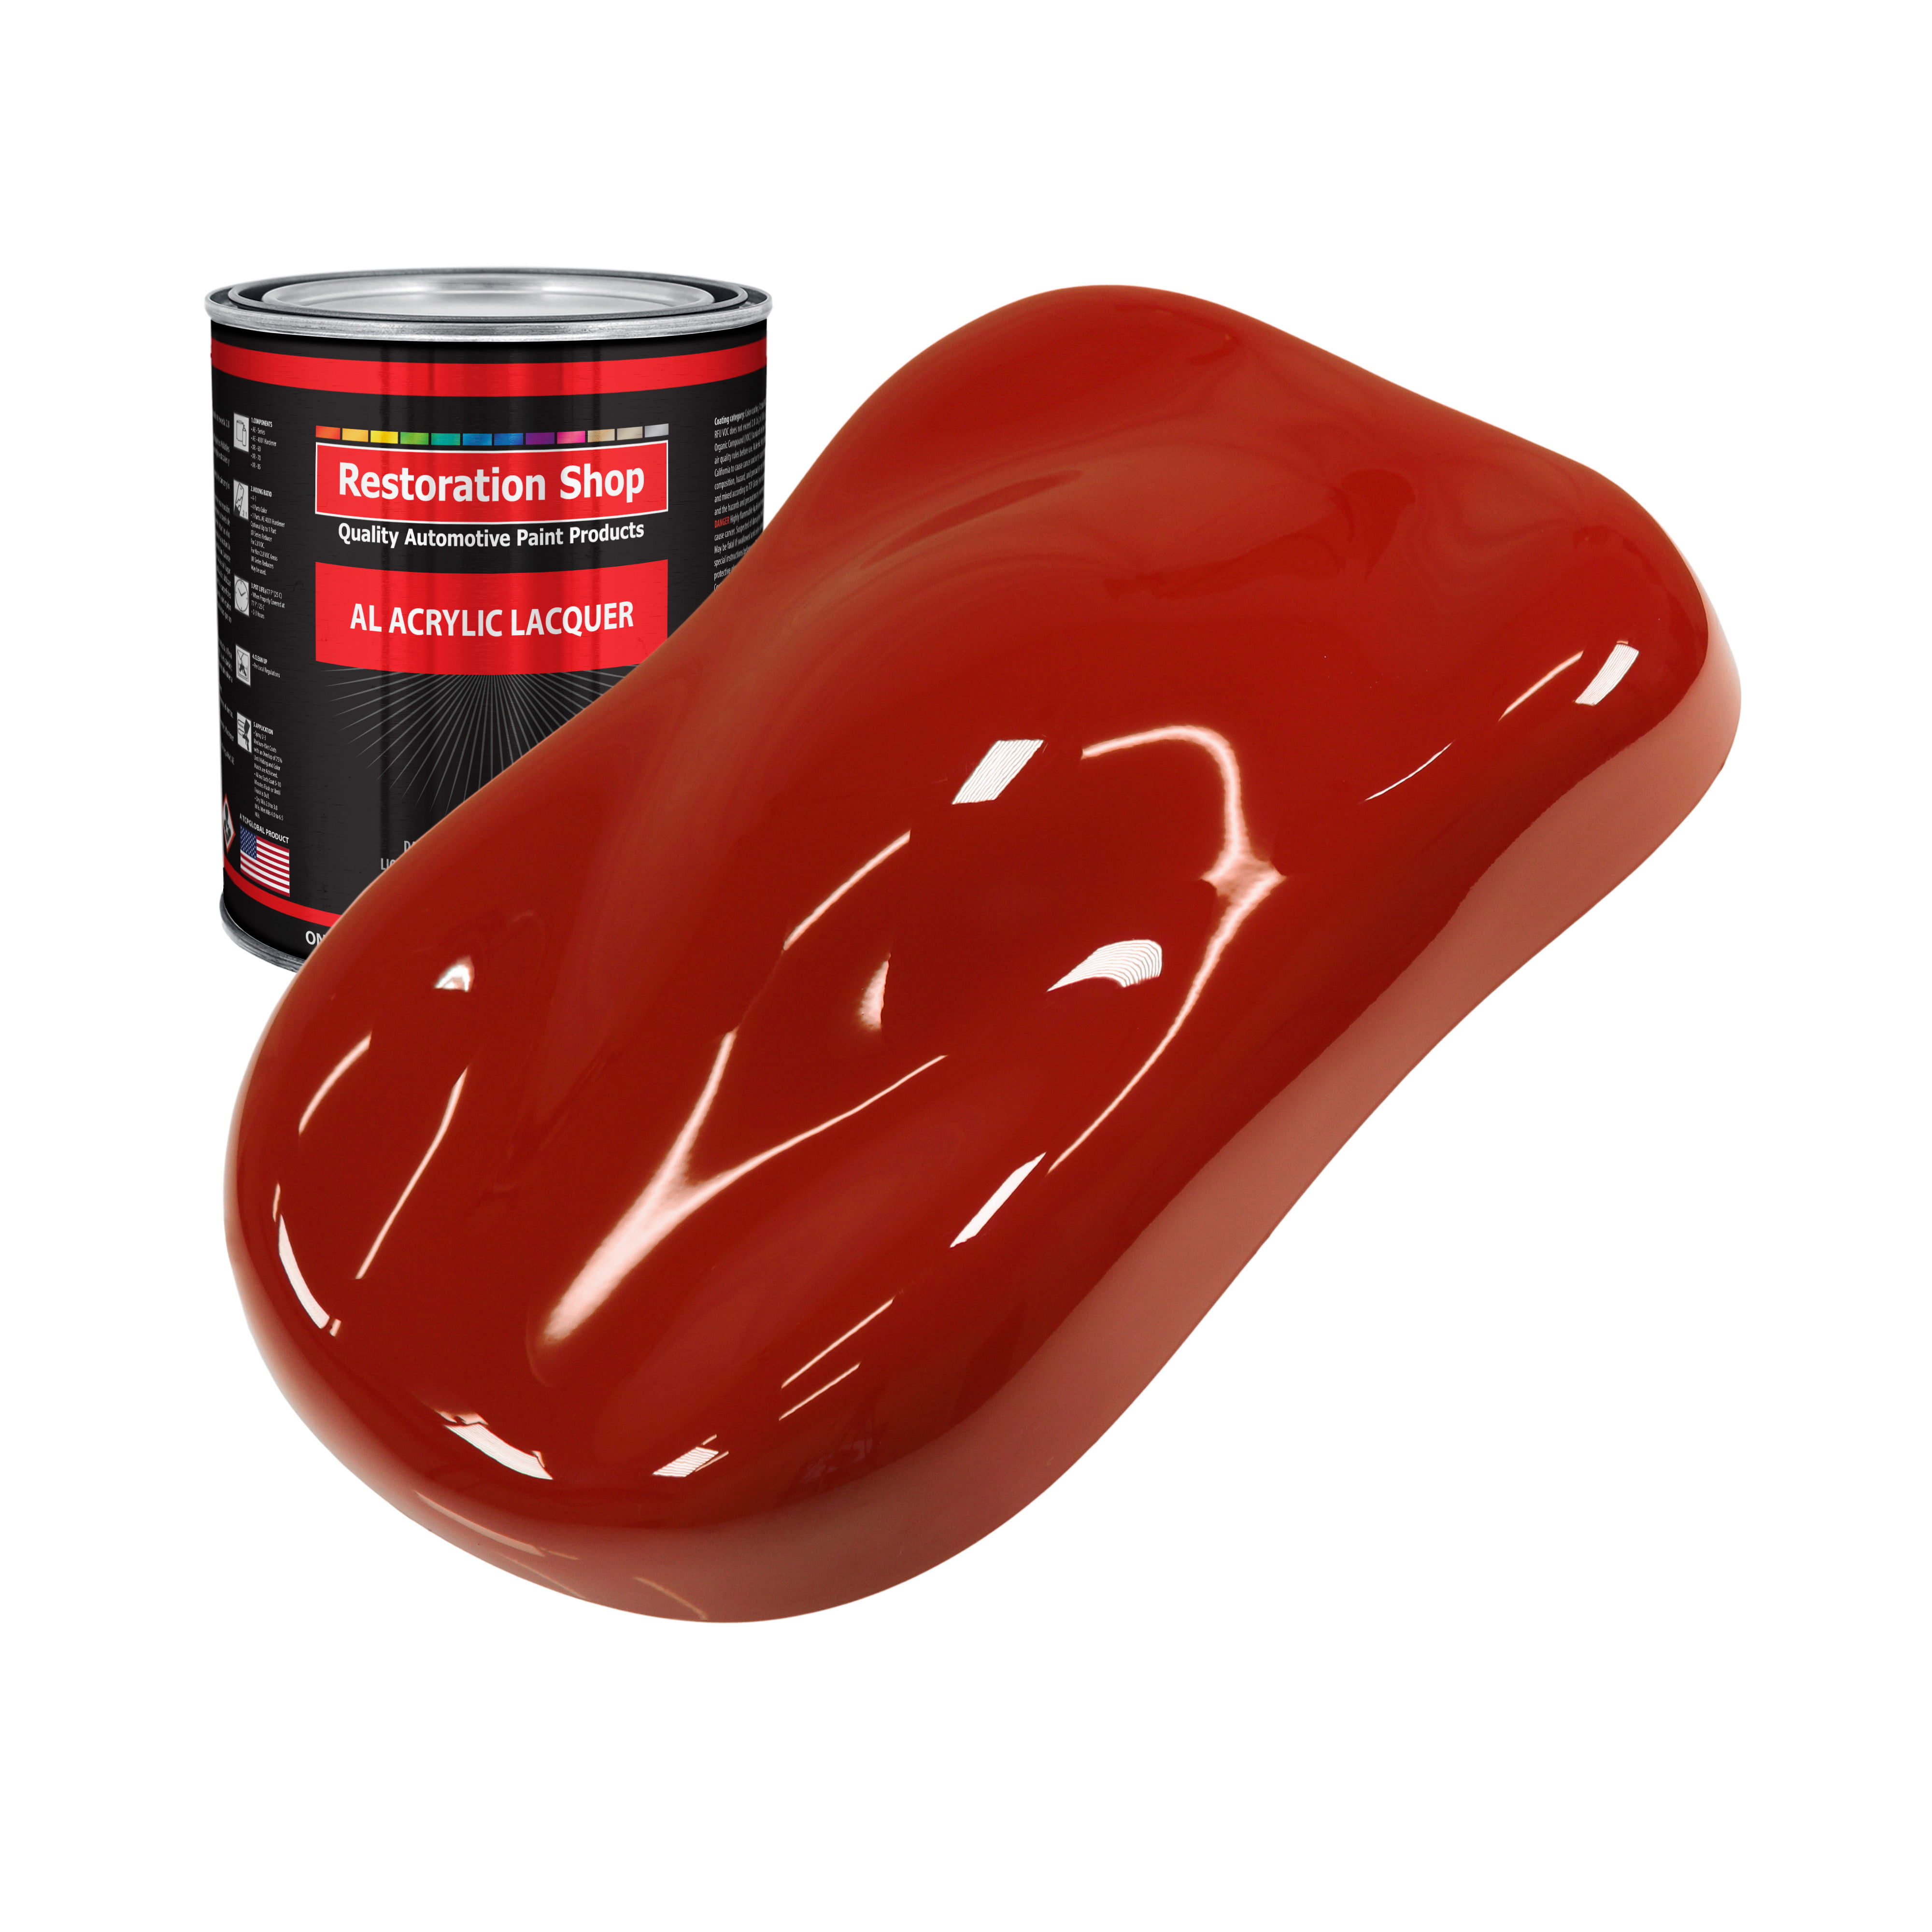 Restoration Shop - Candy Apple Red Acrylic Lacquer Auto Paint - Quart